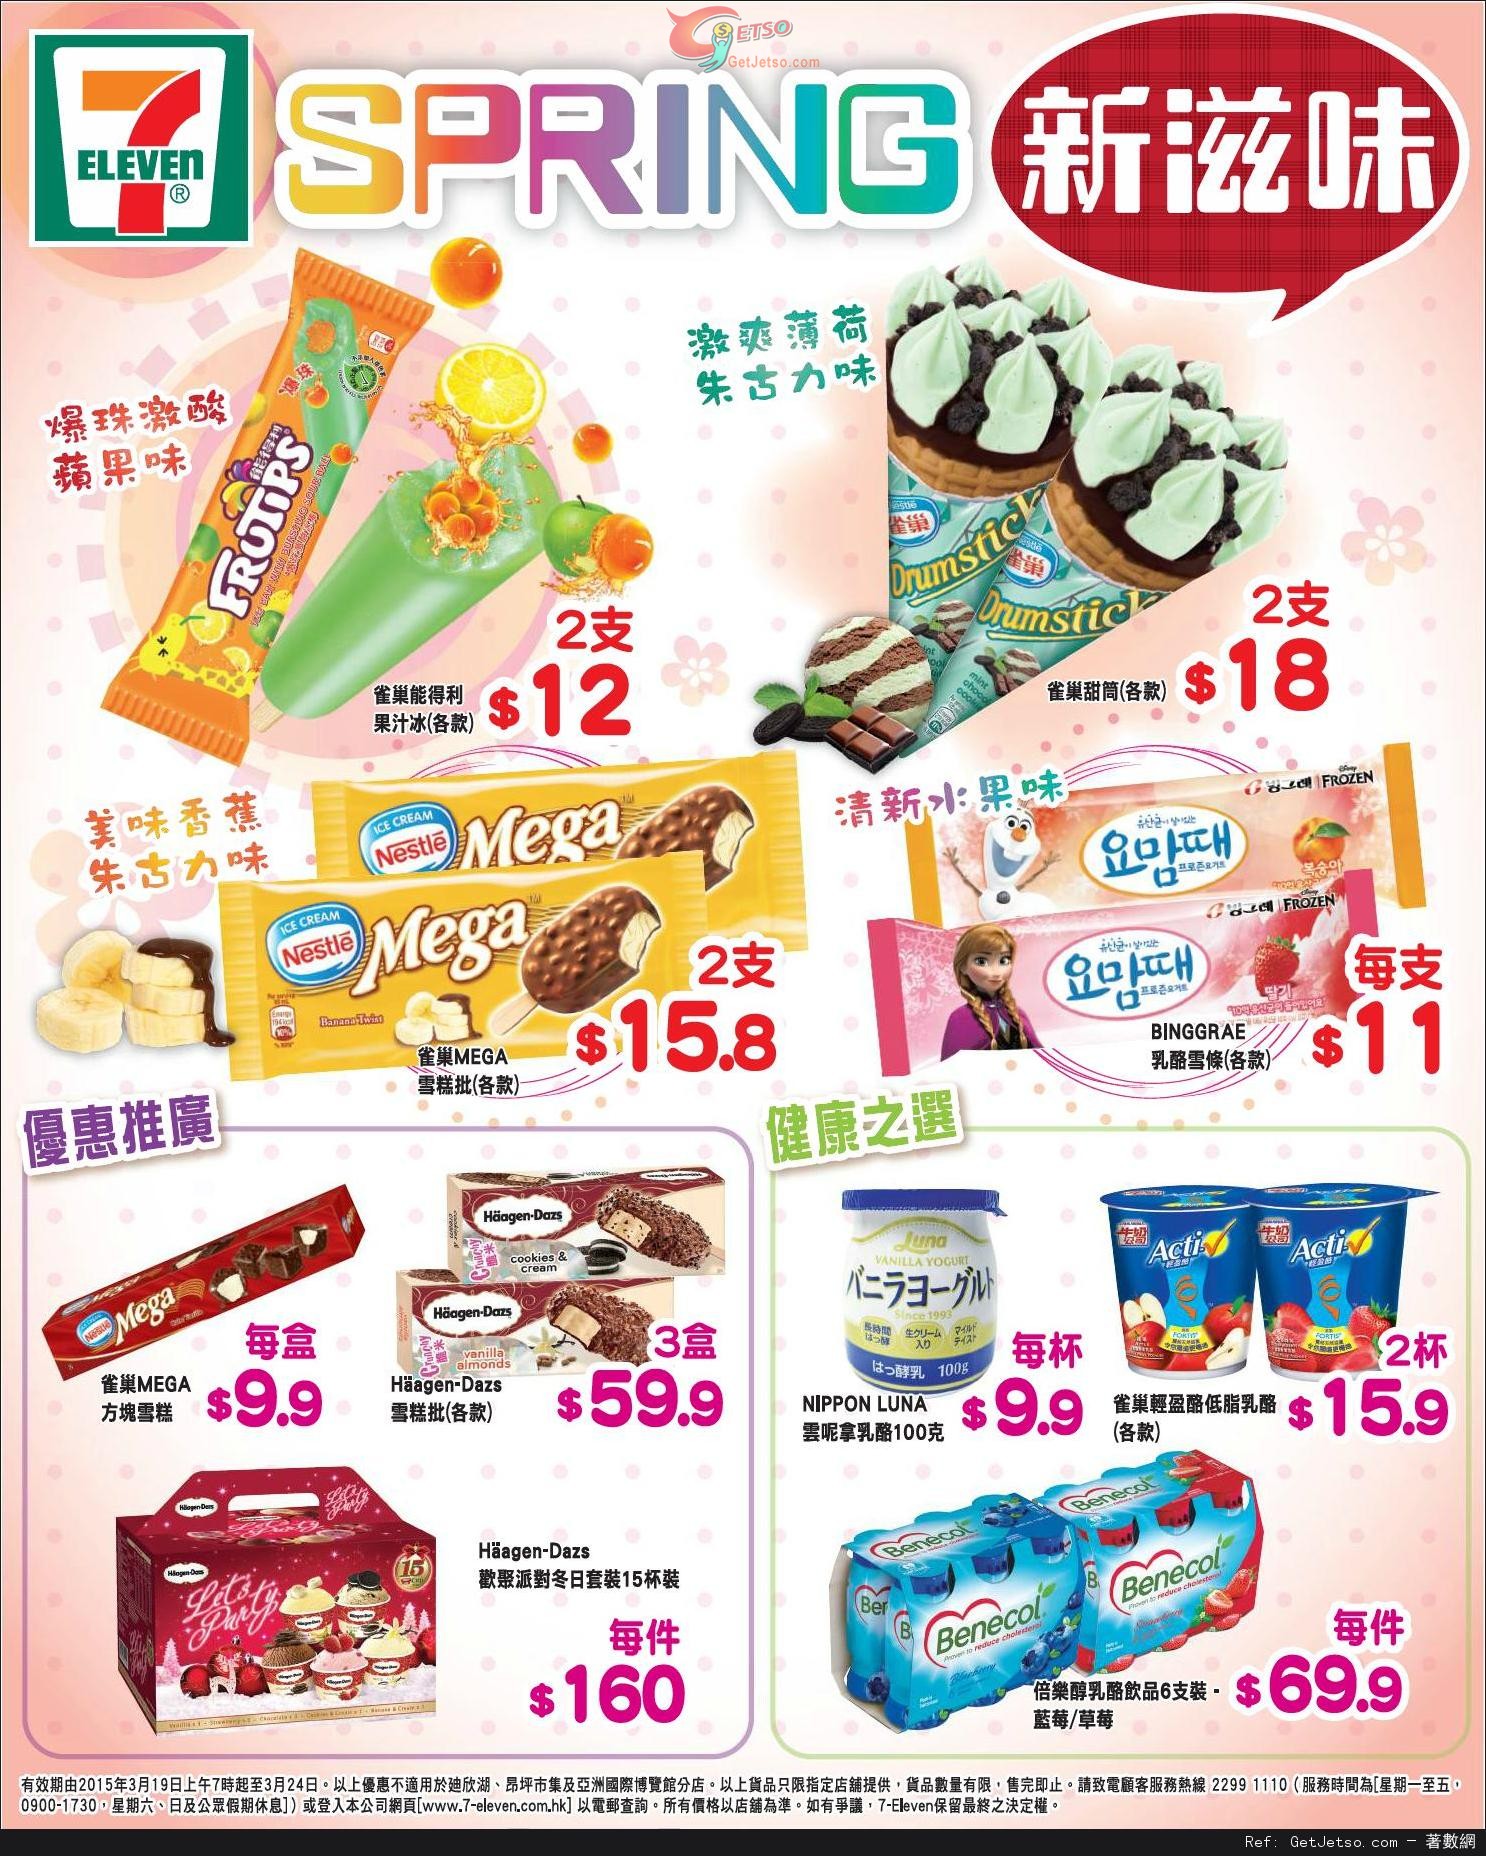 7-Eleven 雪糕及乳酪產品購買優惠(至15年3月24日)圖片1